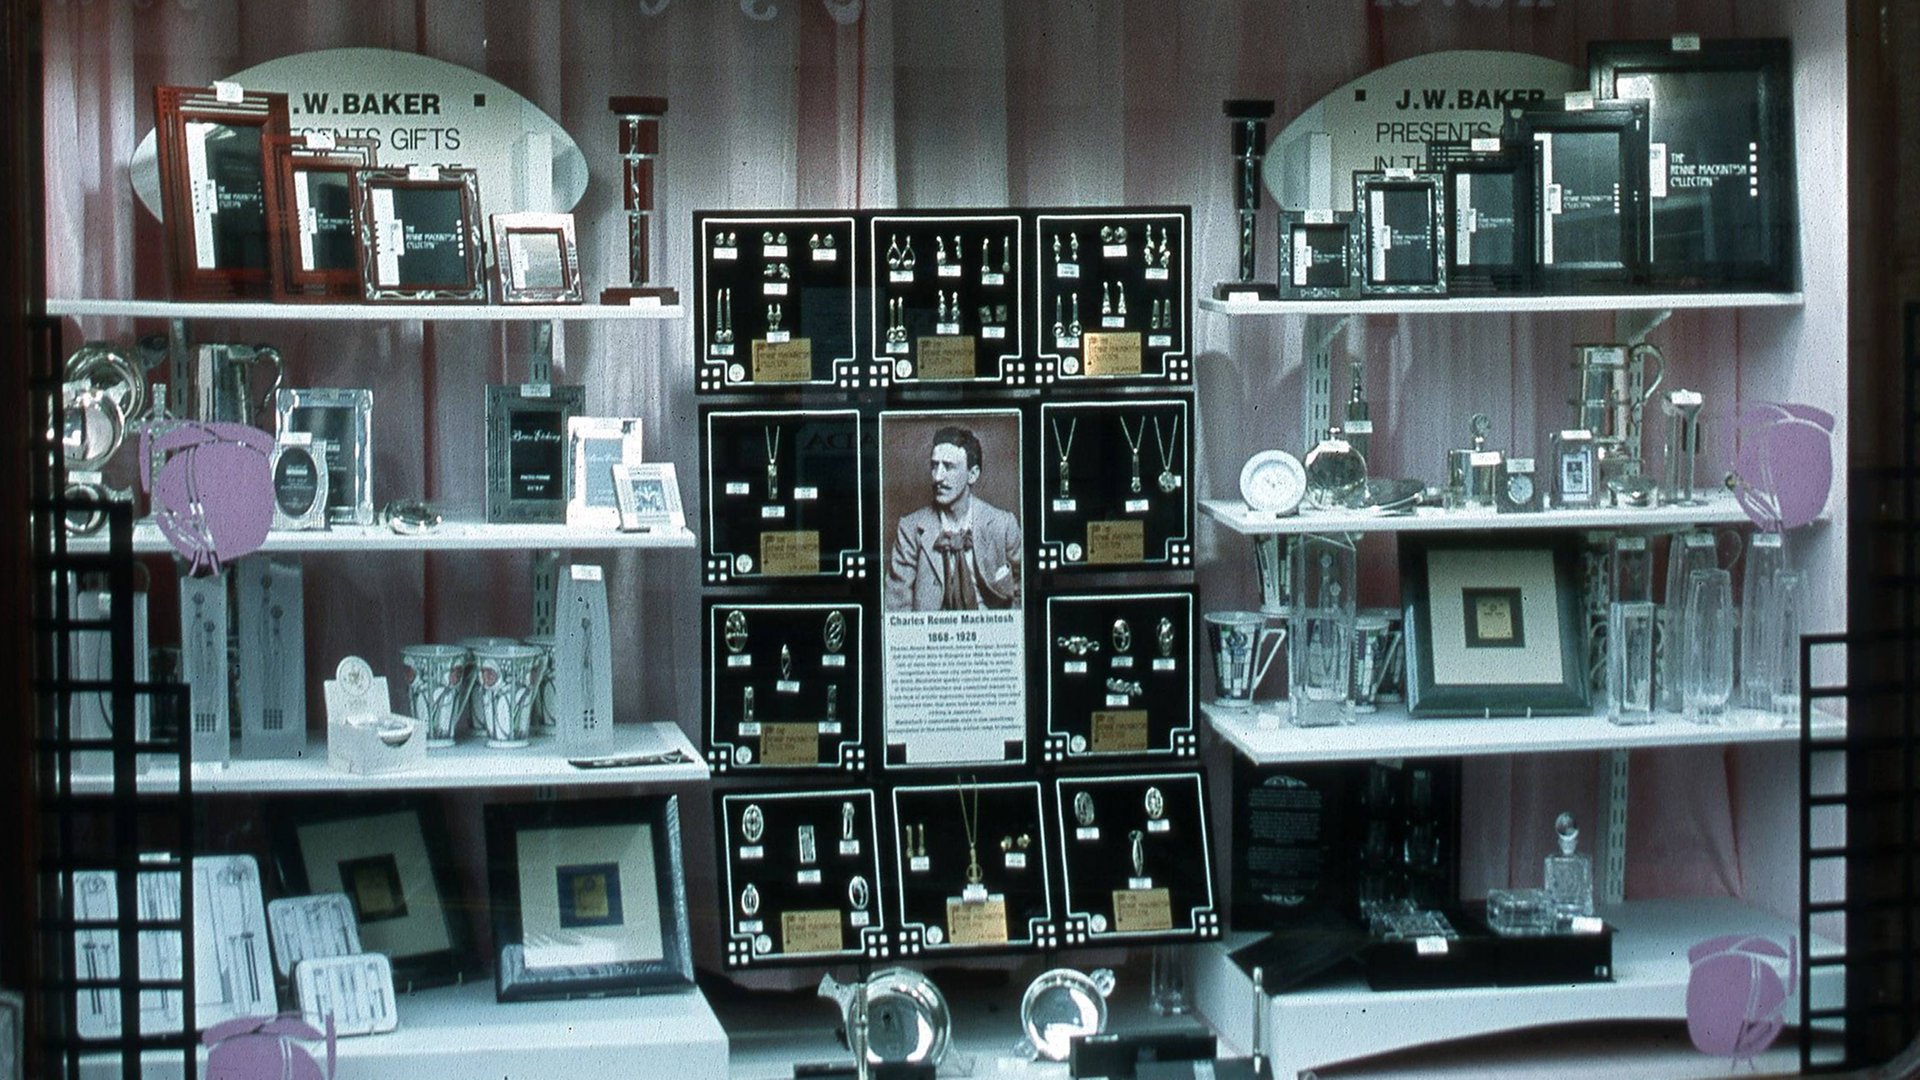 Ein Geschäft in Edinburgh, das sich auf den Verkauf von Bilderrahmen und Schmuck im Stil von Charles Rennie Mackintosh spezialisiert hat.